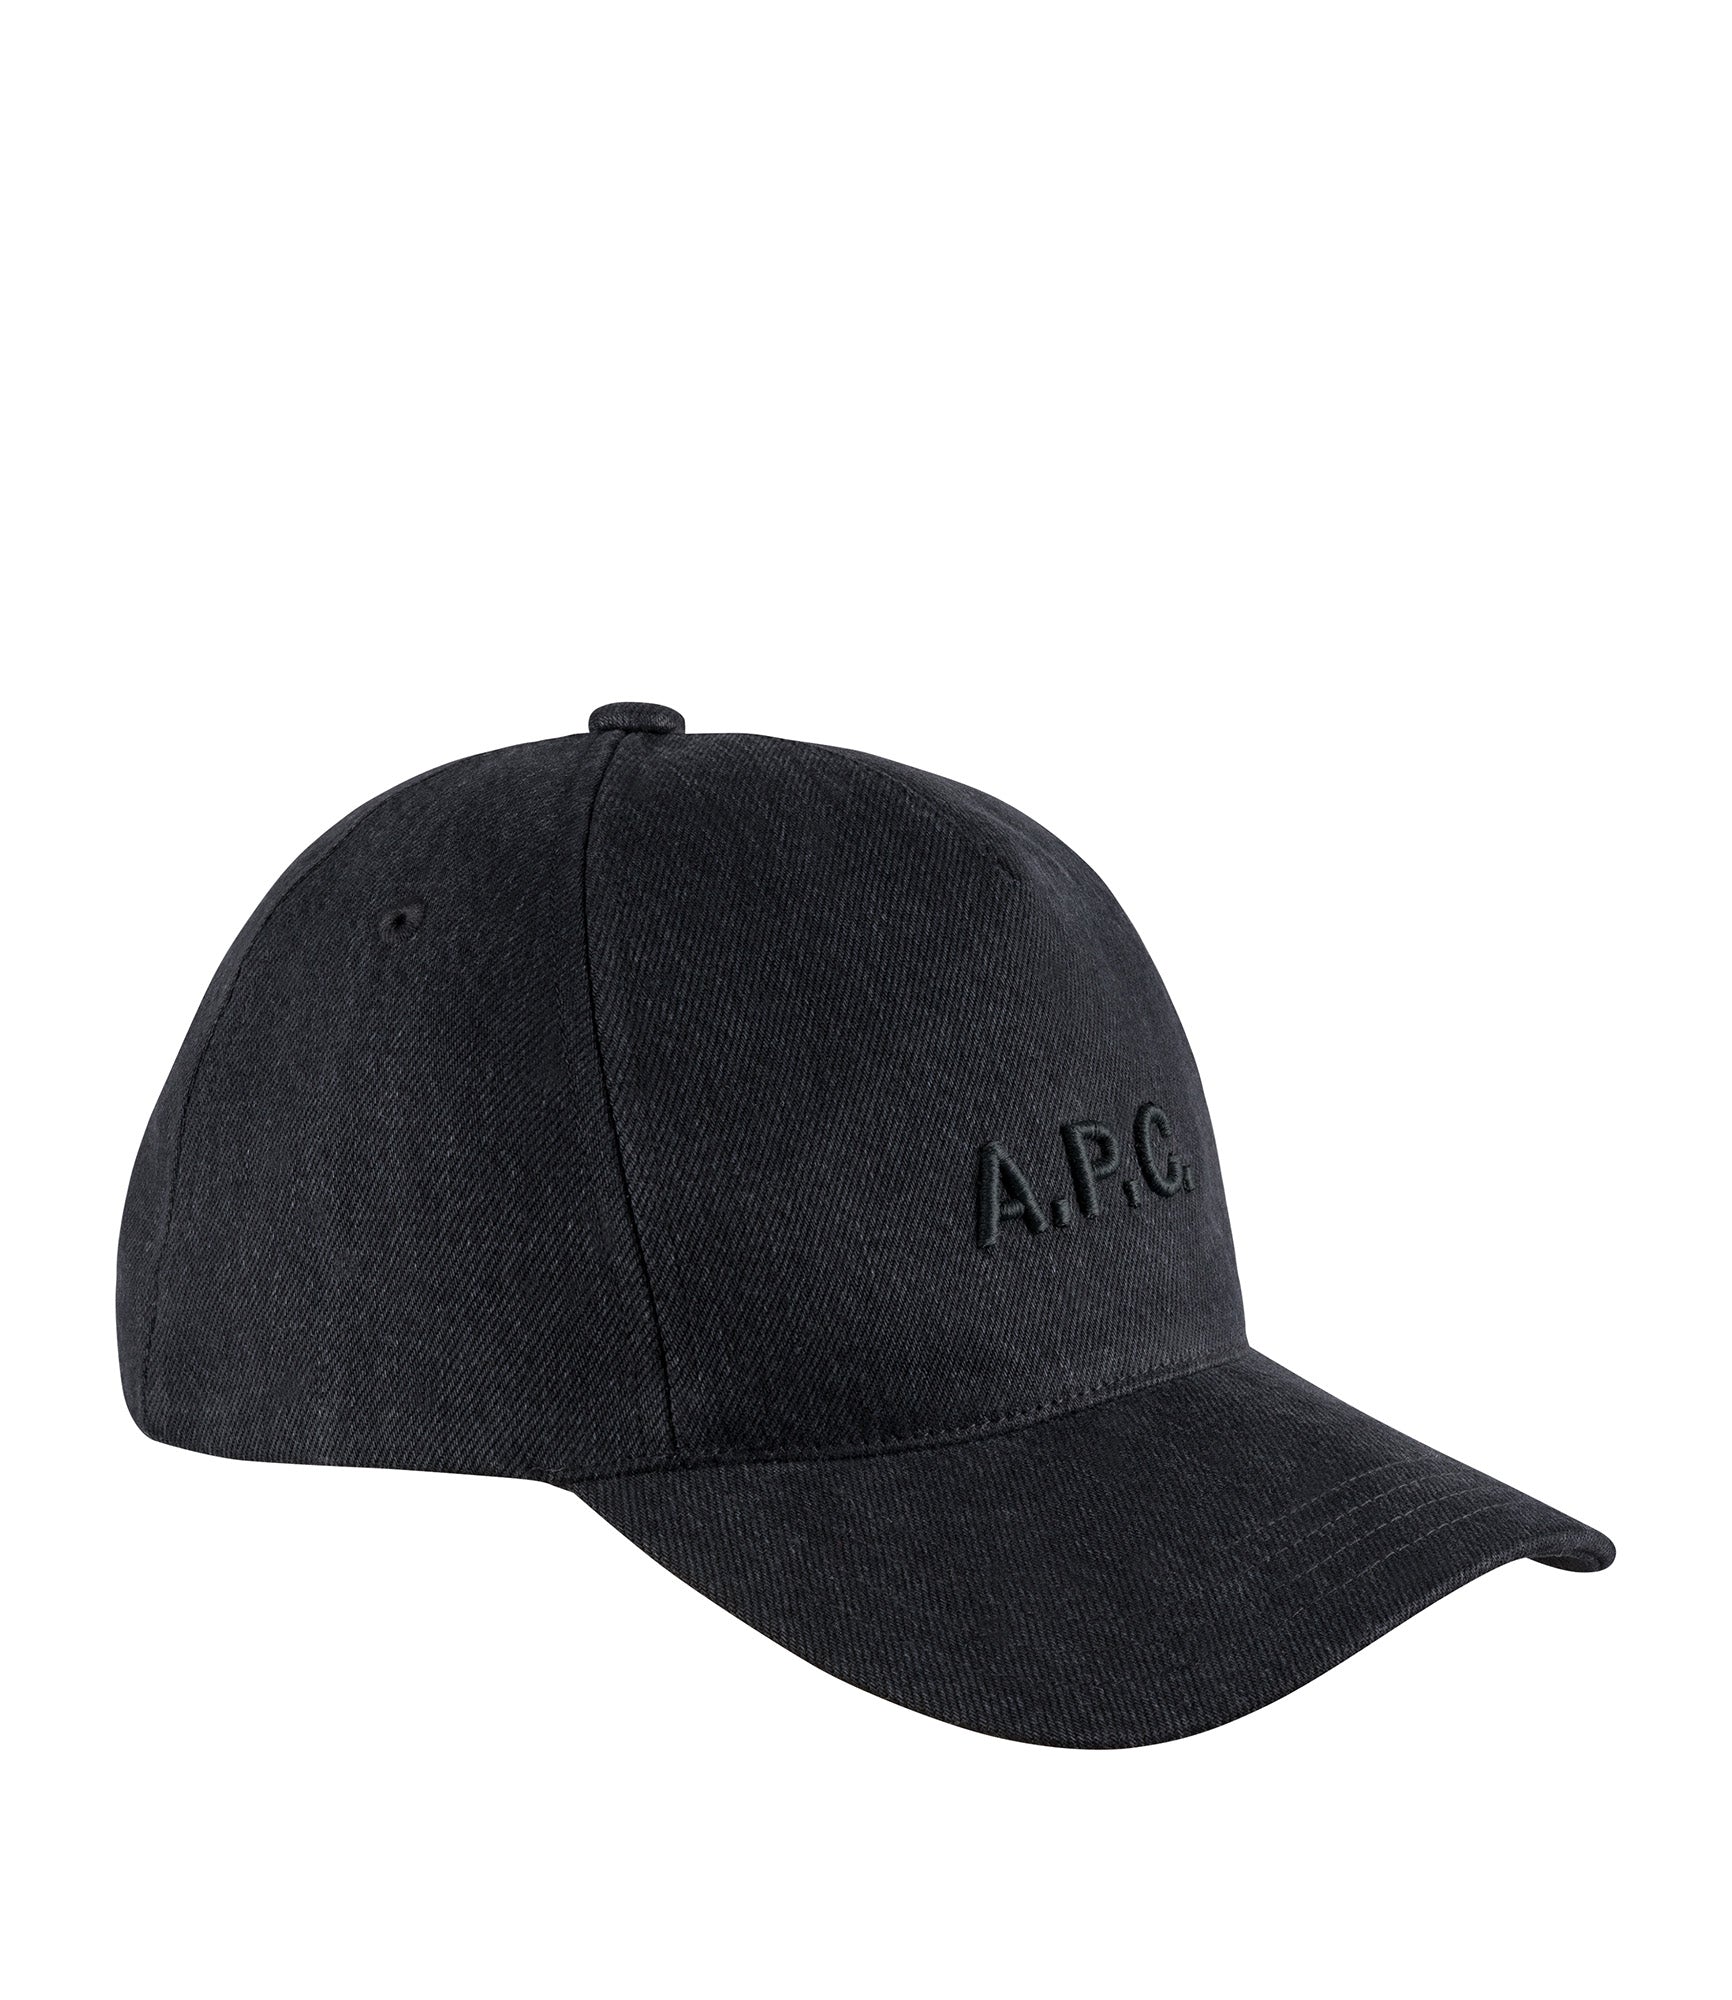 Eden baseball cap | Baseball cap in black denim with V.P.C. logo